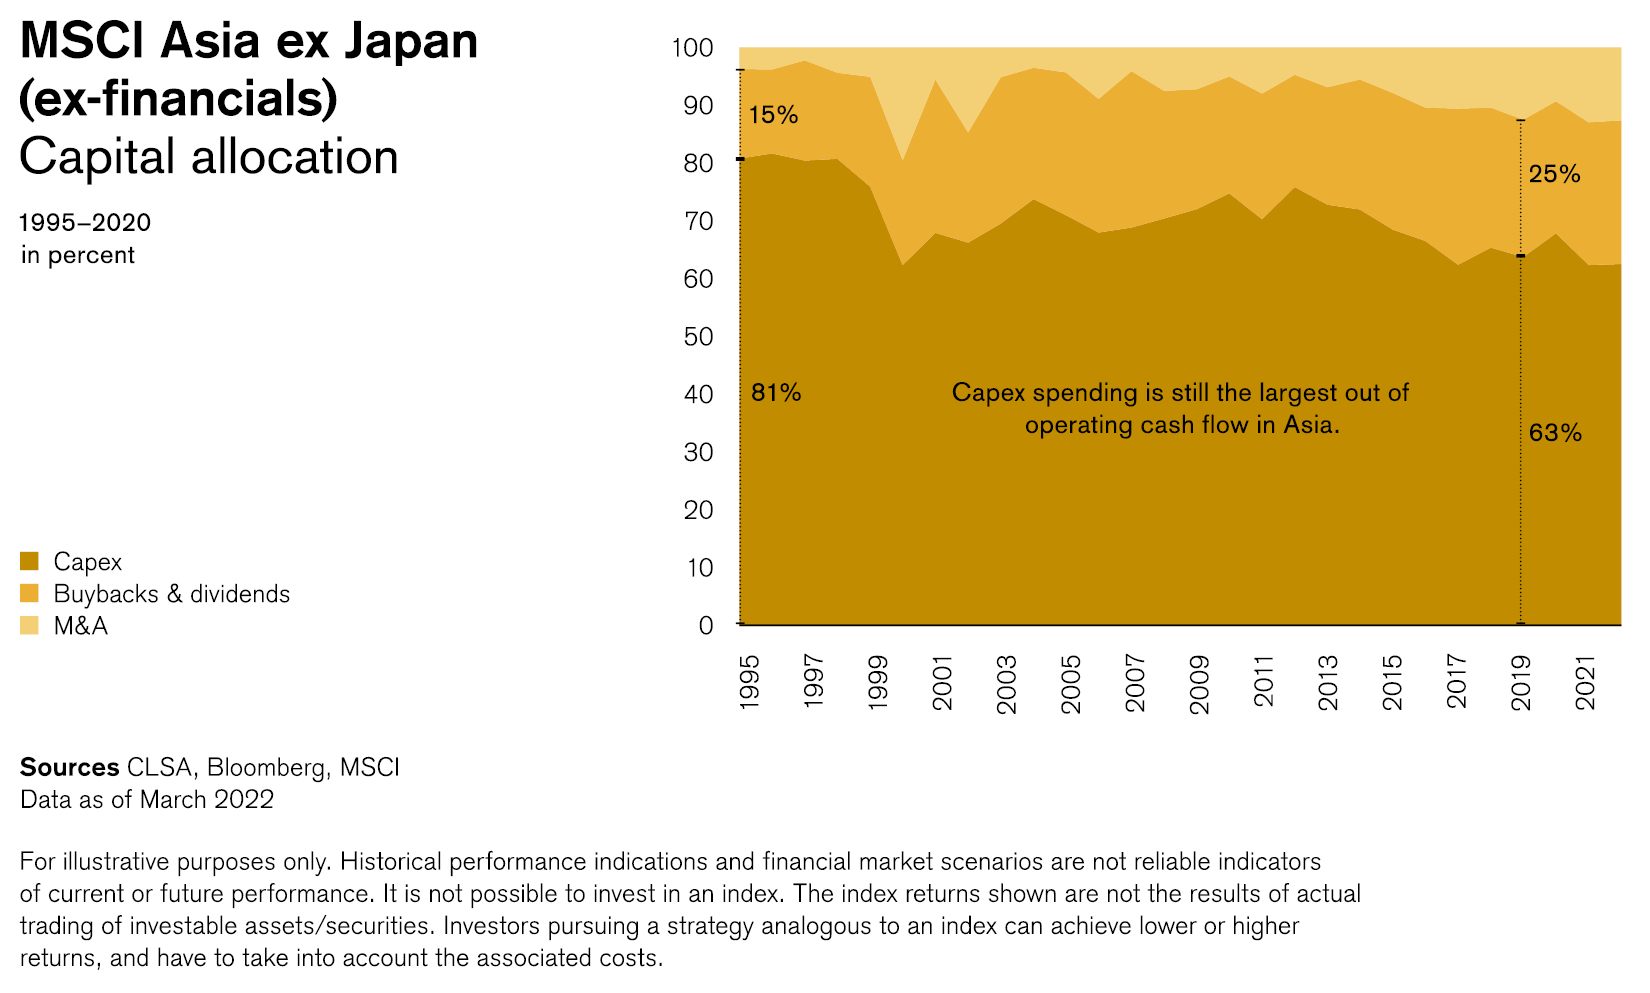 Capital allocation 1995-2000 in percent (MSCI Asia ex Japan - ex-financials)